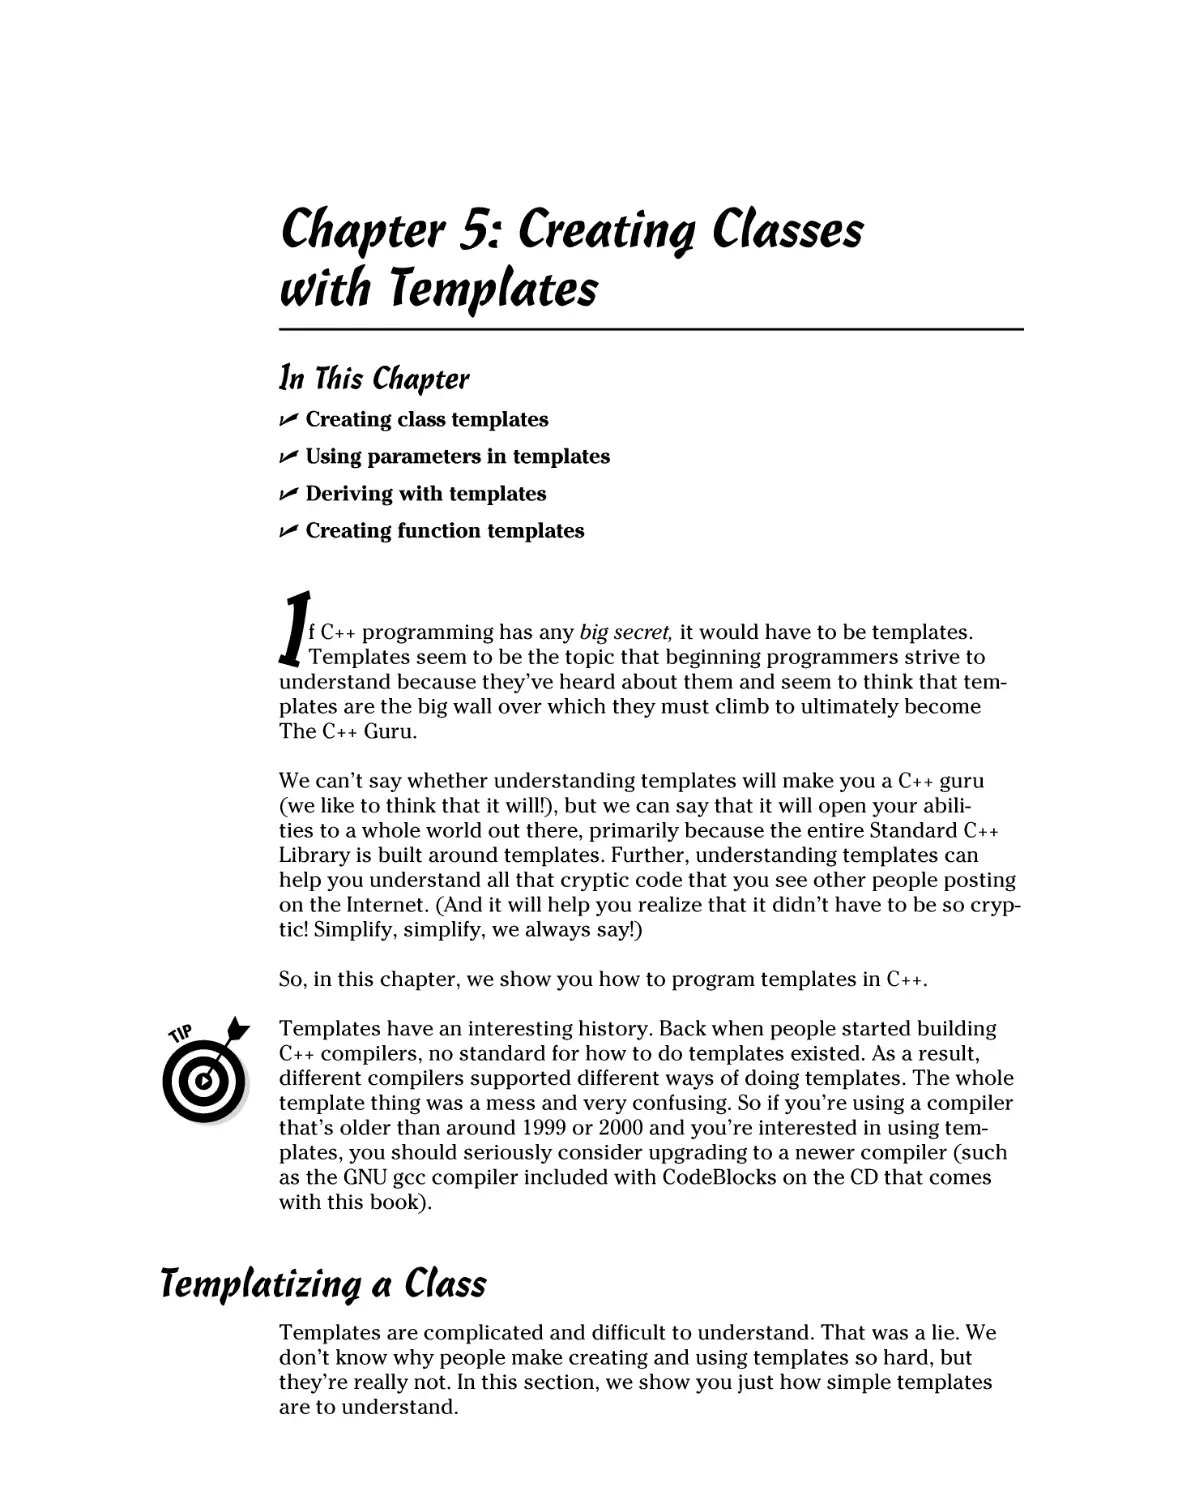 Chapter 5
Templatizing a Class